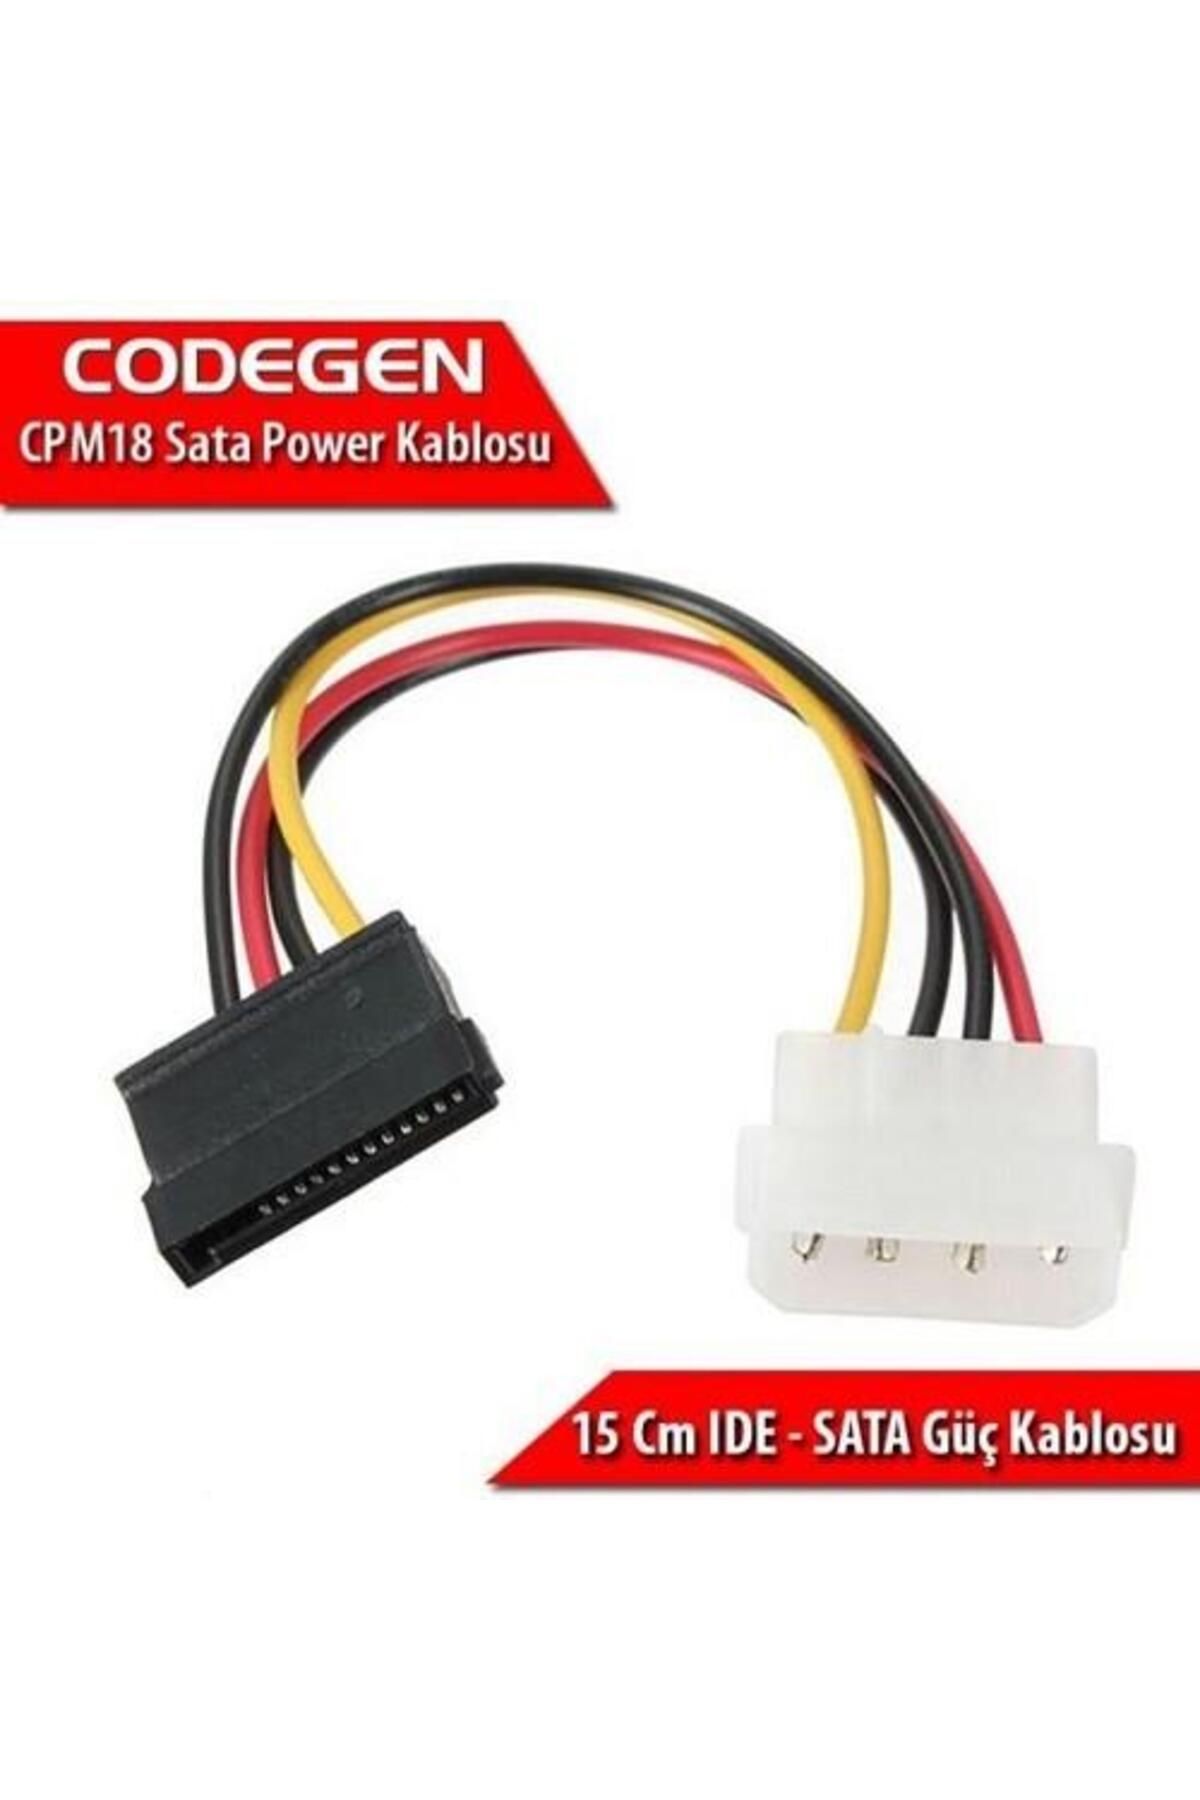 CODEGEN Cpm18 Hdd (HARDDİSK) Sata Power Kablosu 10lu Paket